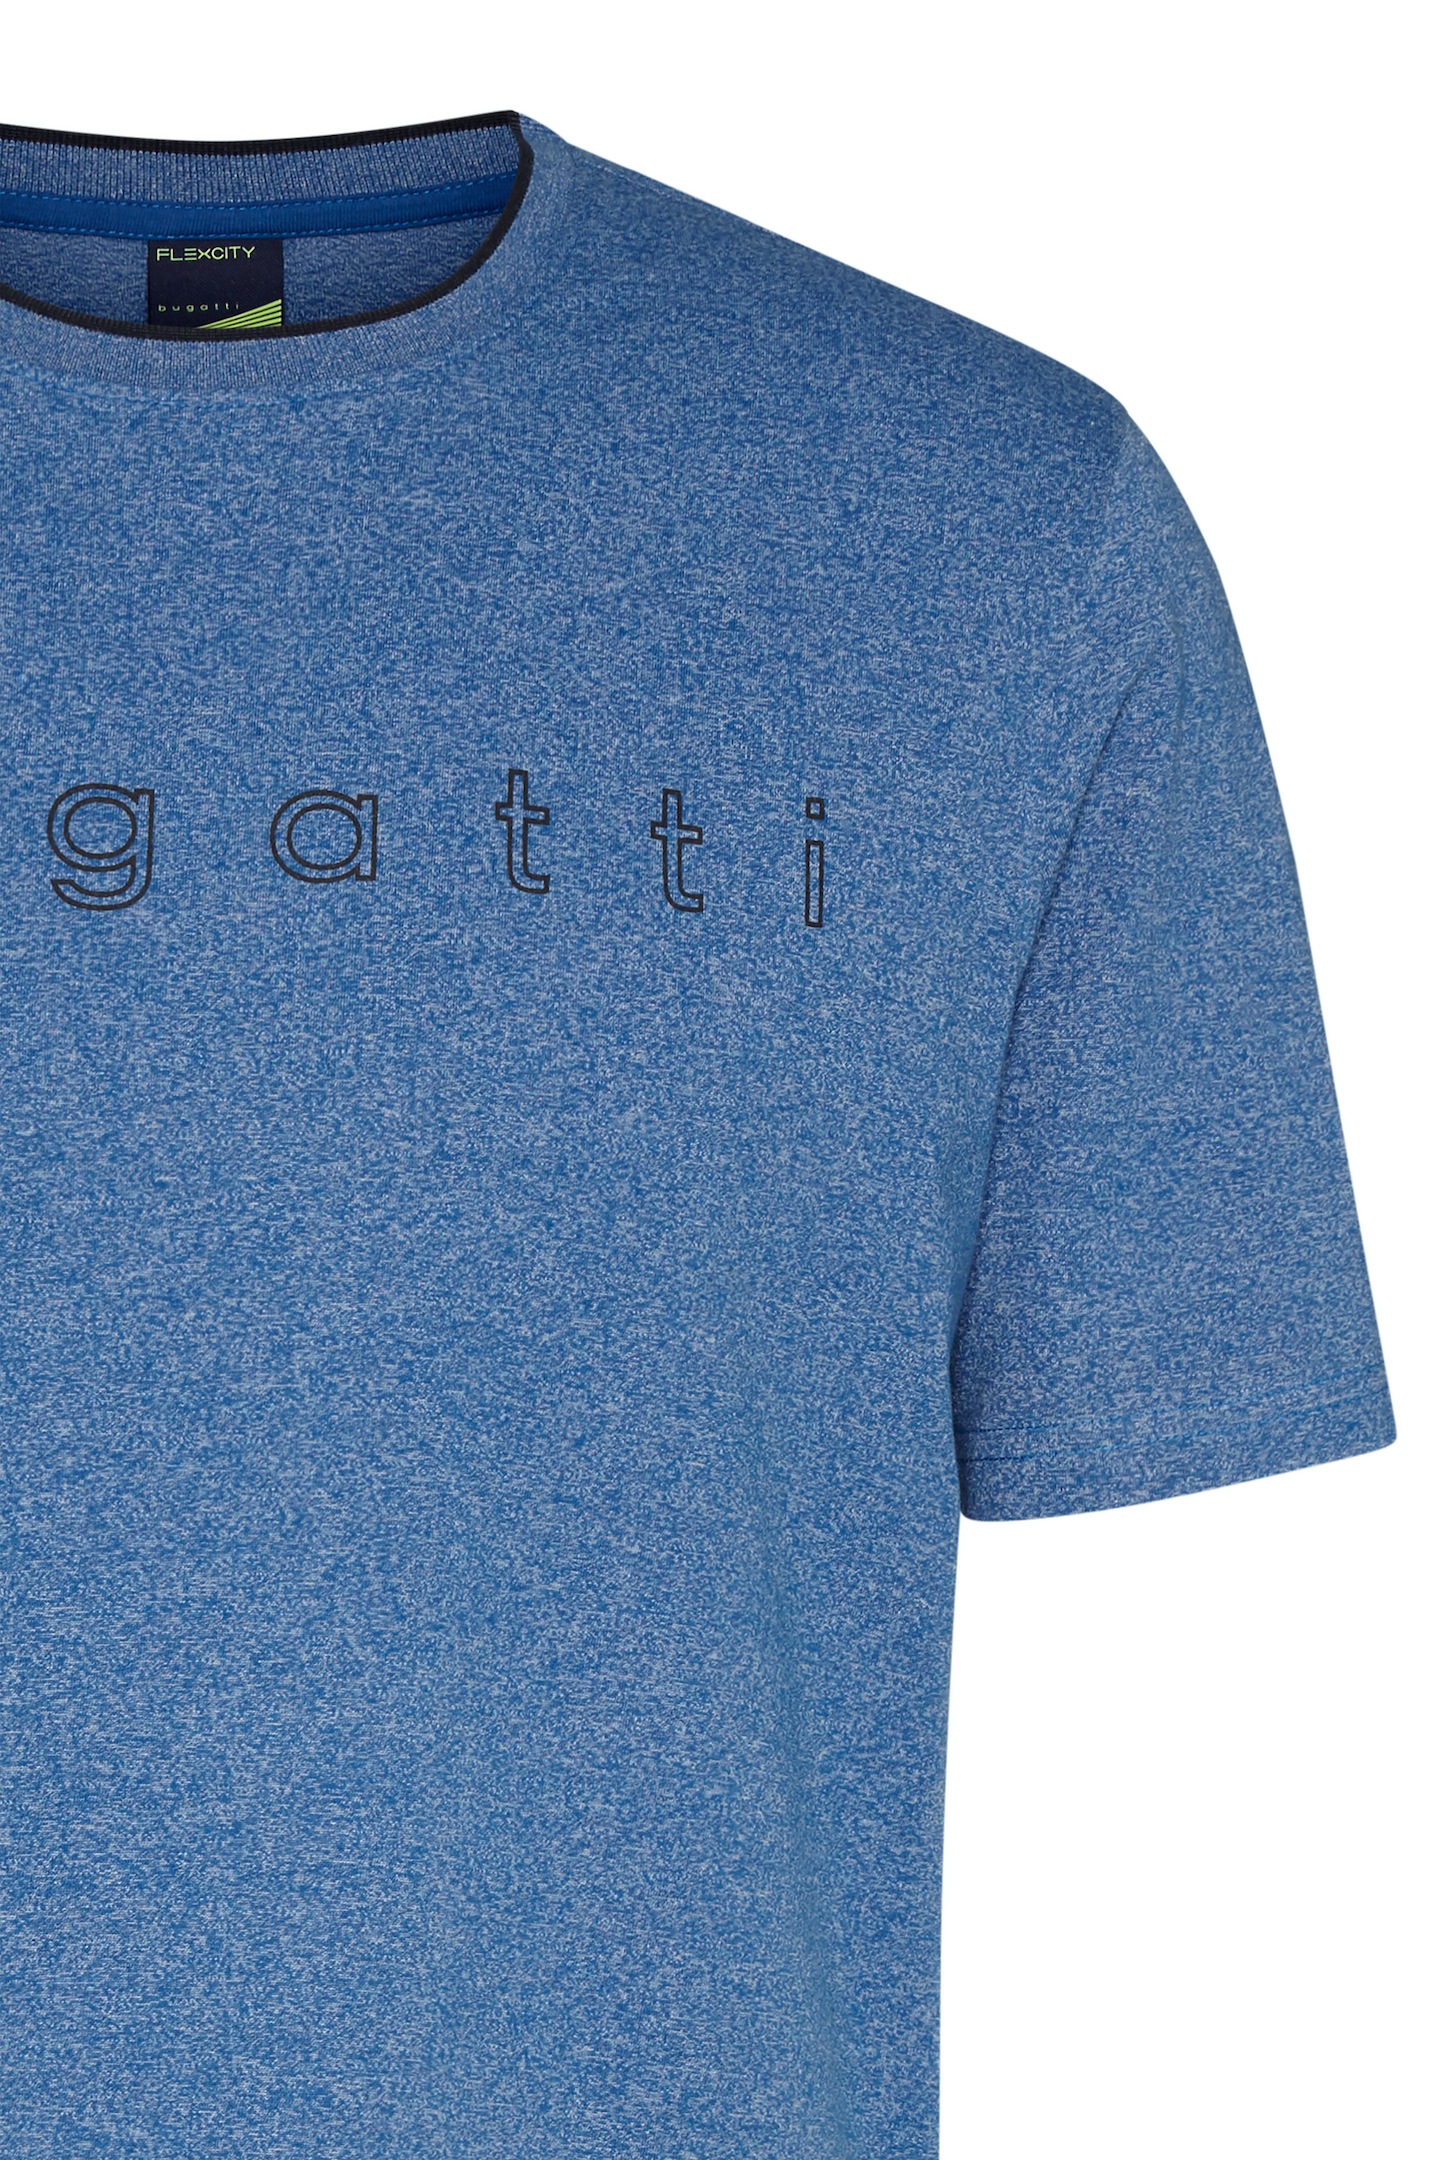 bugatti T-Shirt, mit großem bugatti Logo-Print online kaufen